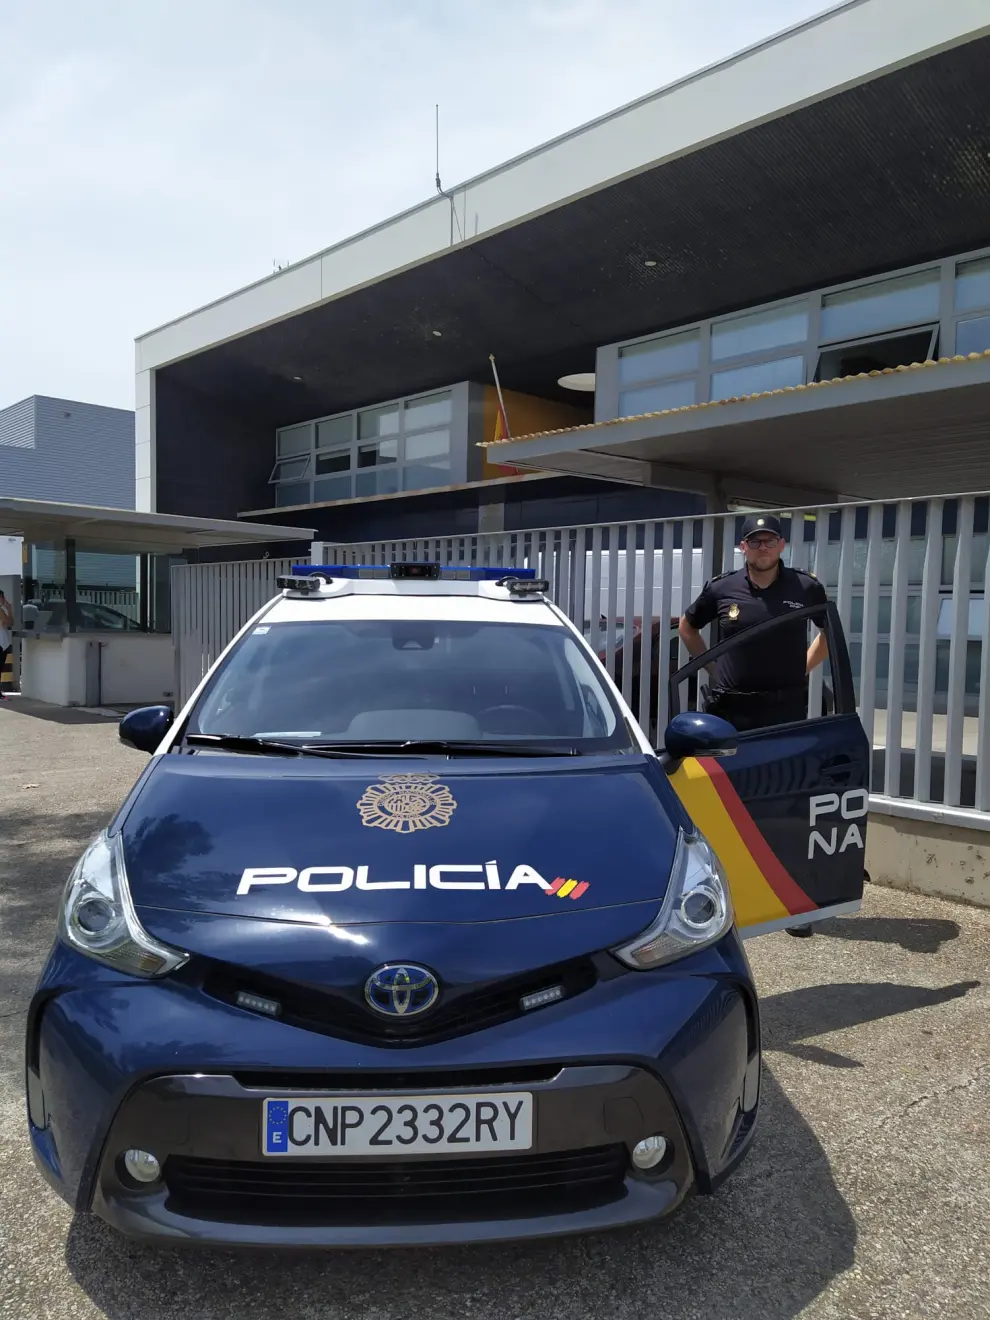 La Policía Nacional de Zaragoza suma 5 nuevos radiopatrullas inteligentes